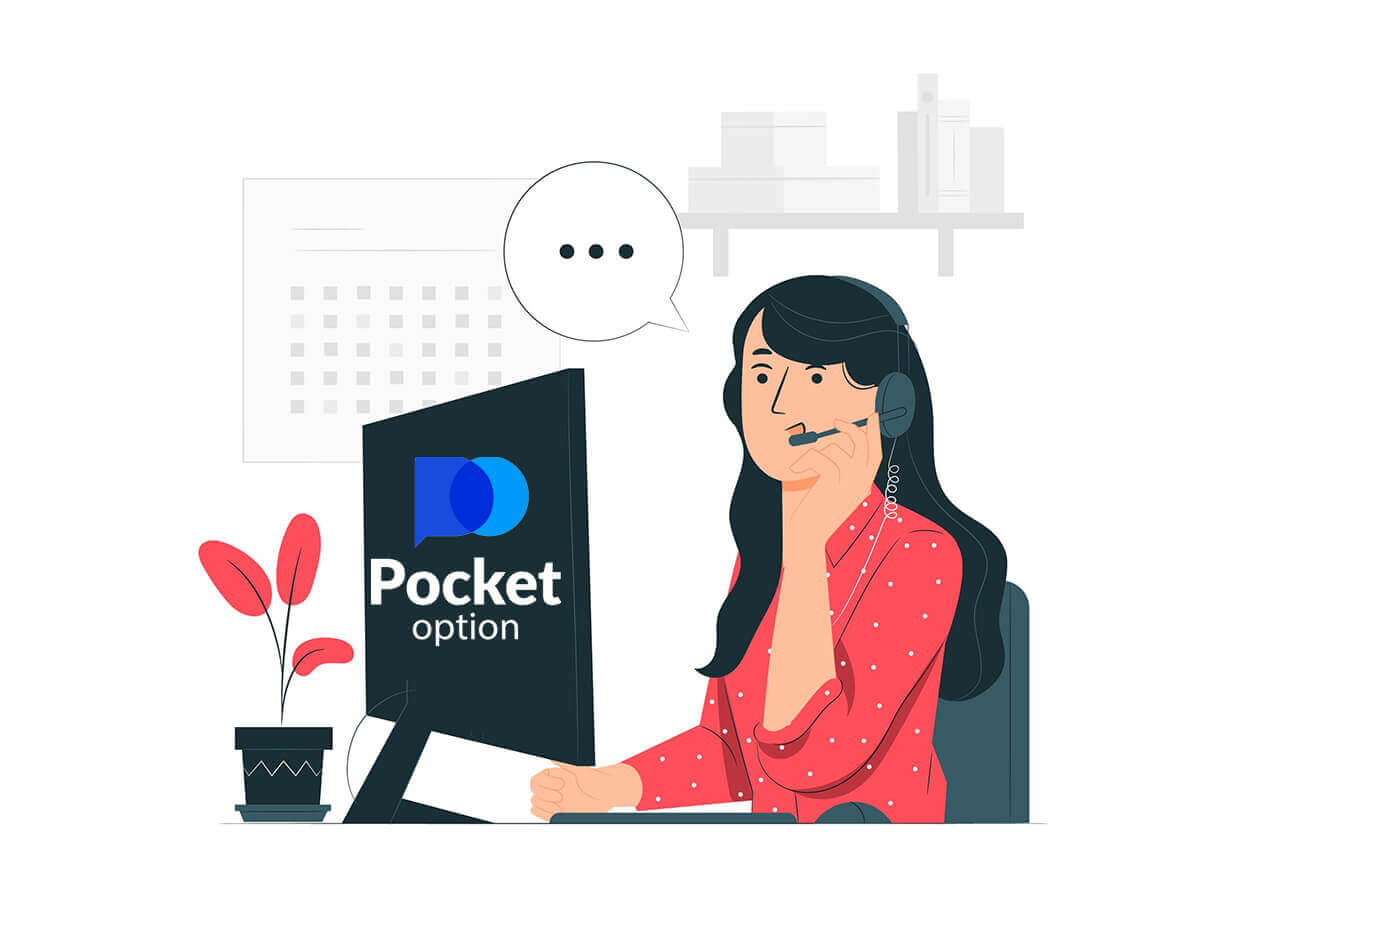 Come contattare il supporto per Pocket Option